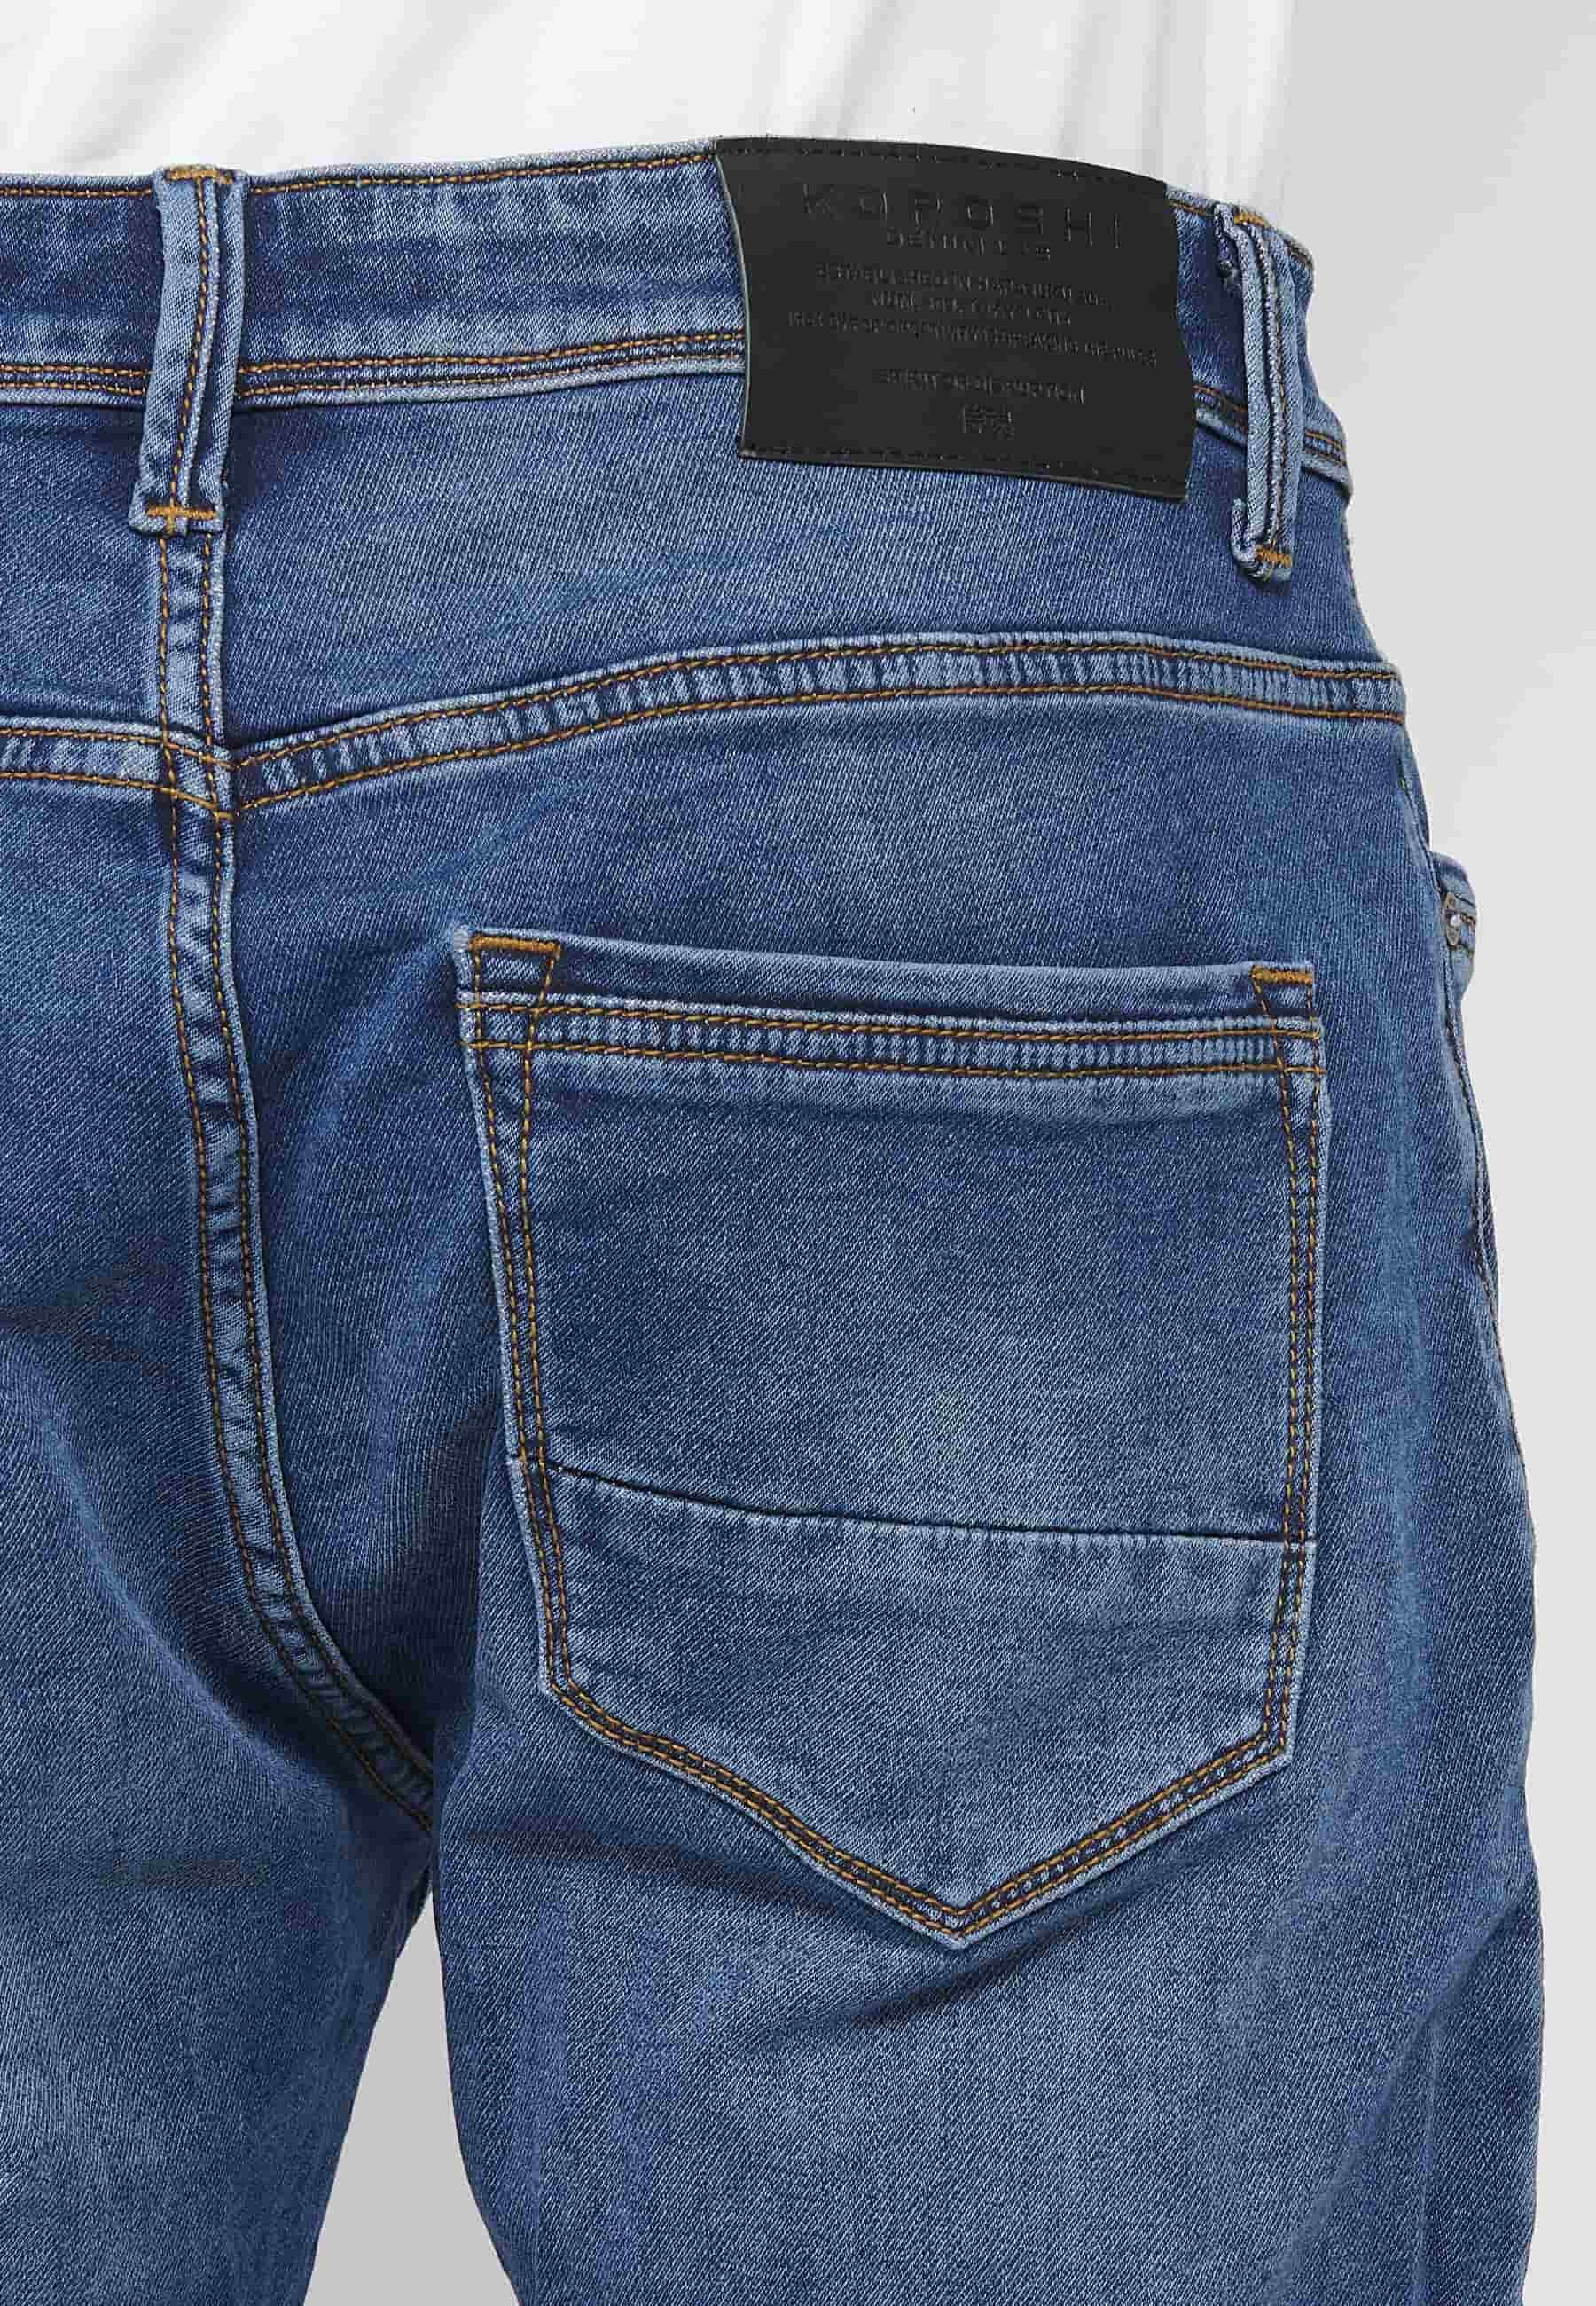 Pantalons llargs jeans llargs low rise slim fit amb Tancament davanter amb cremallera i botó de Color Blau per a Home 7